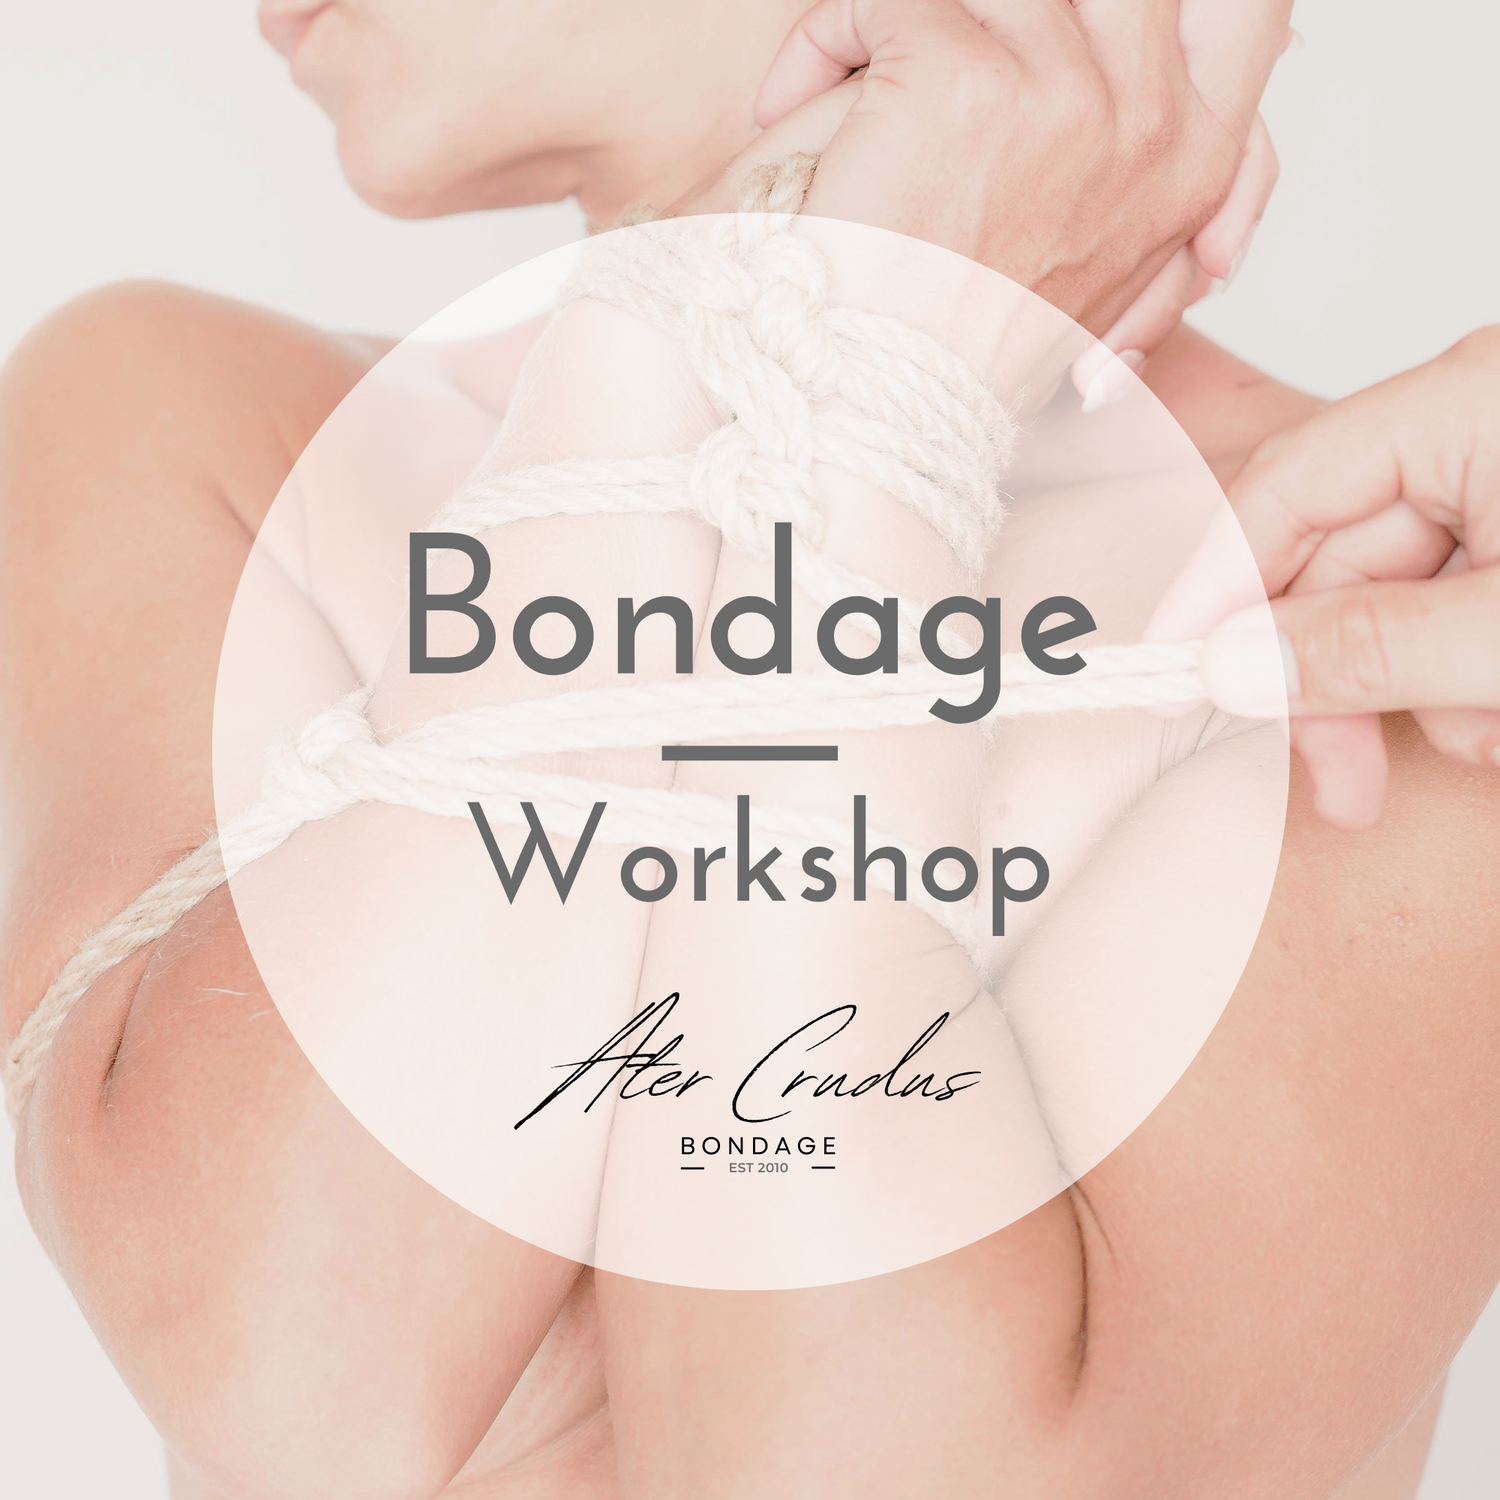 Bondage & BDSM Workshops unter Anleitung von Ater Crudus | Bondage sicher erlernen